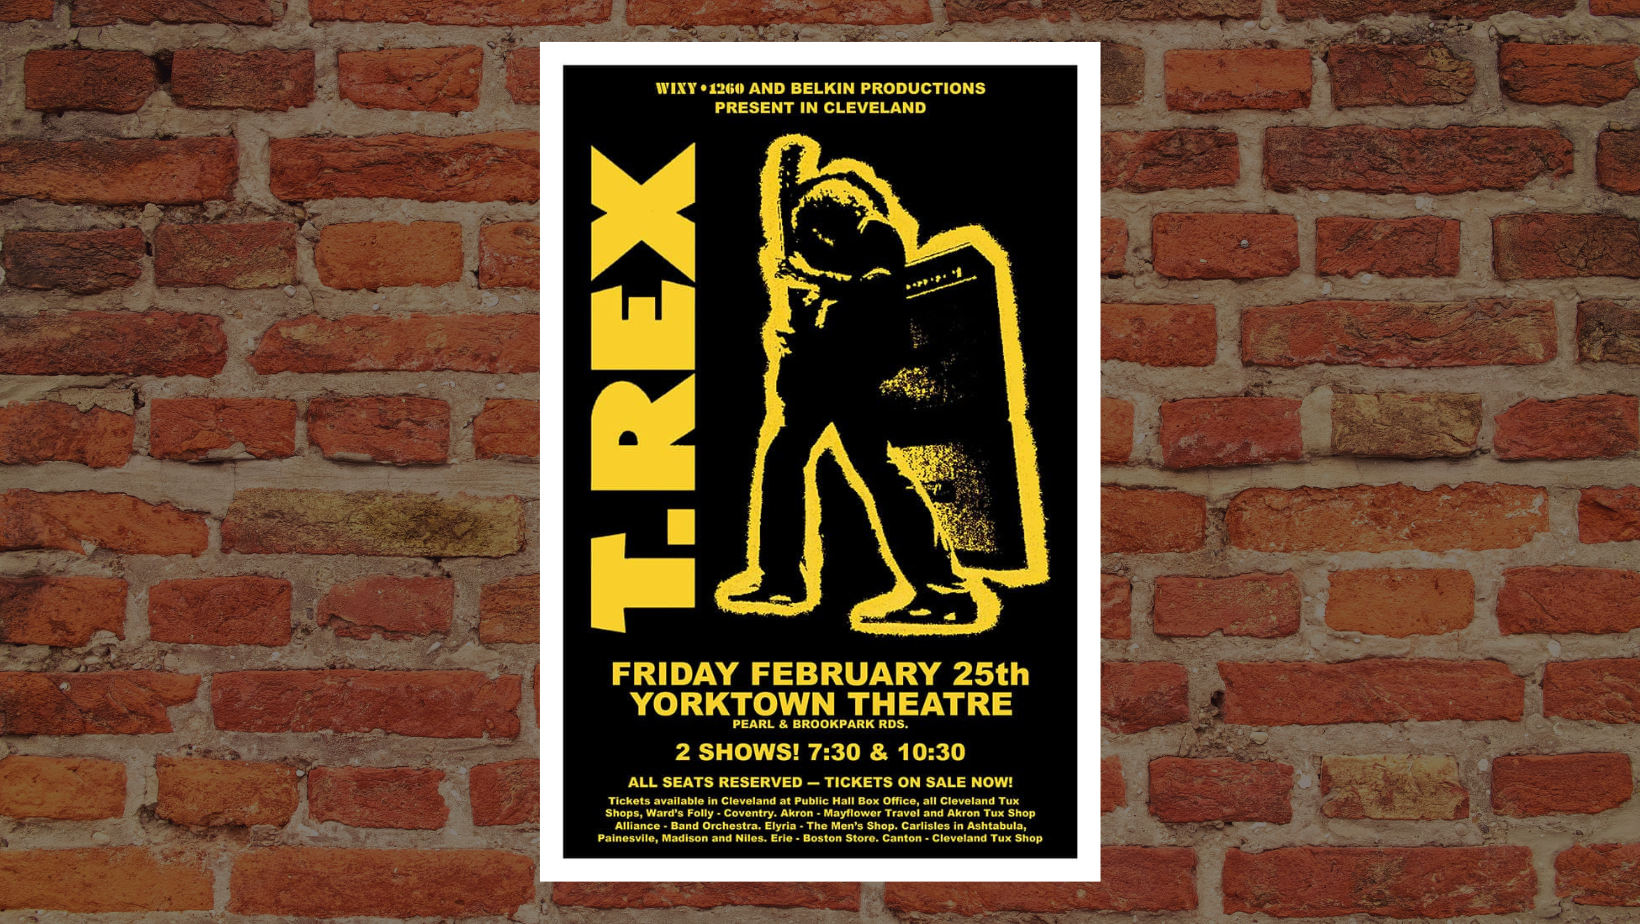 T.Rex Poster Parma Ohio Raw Sugar Studio